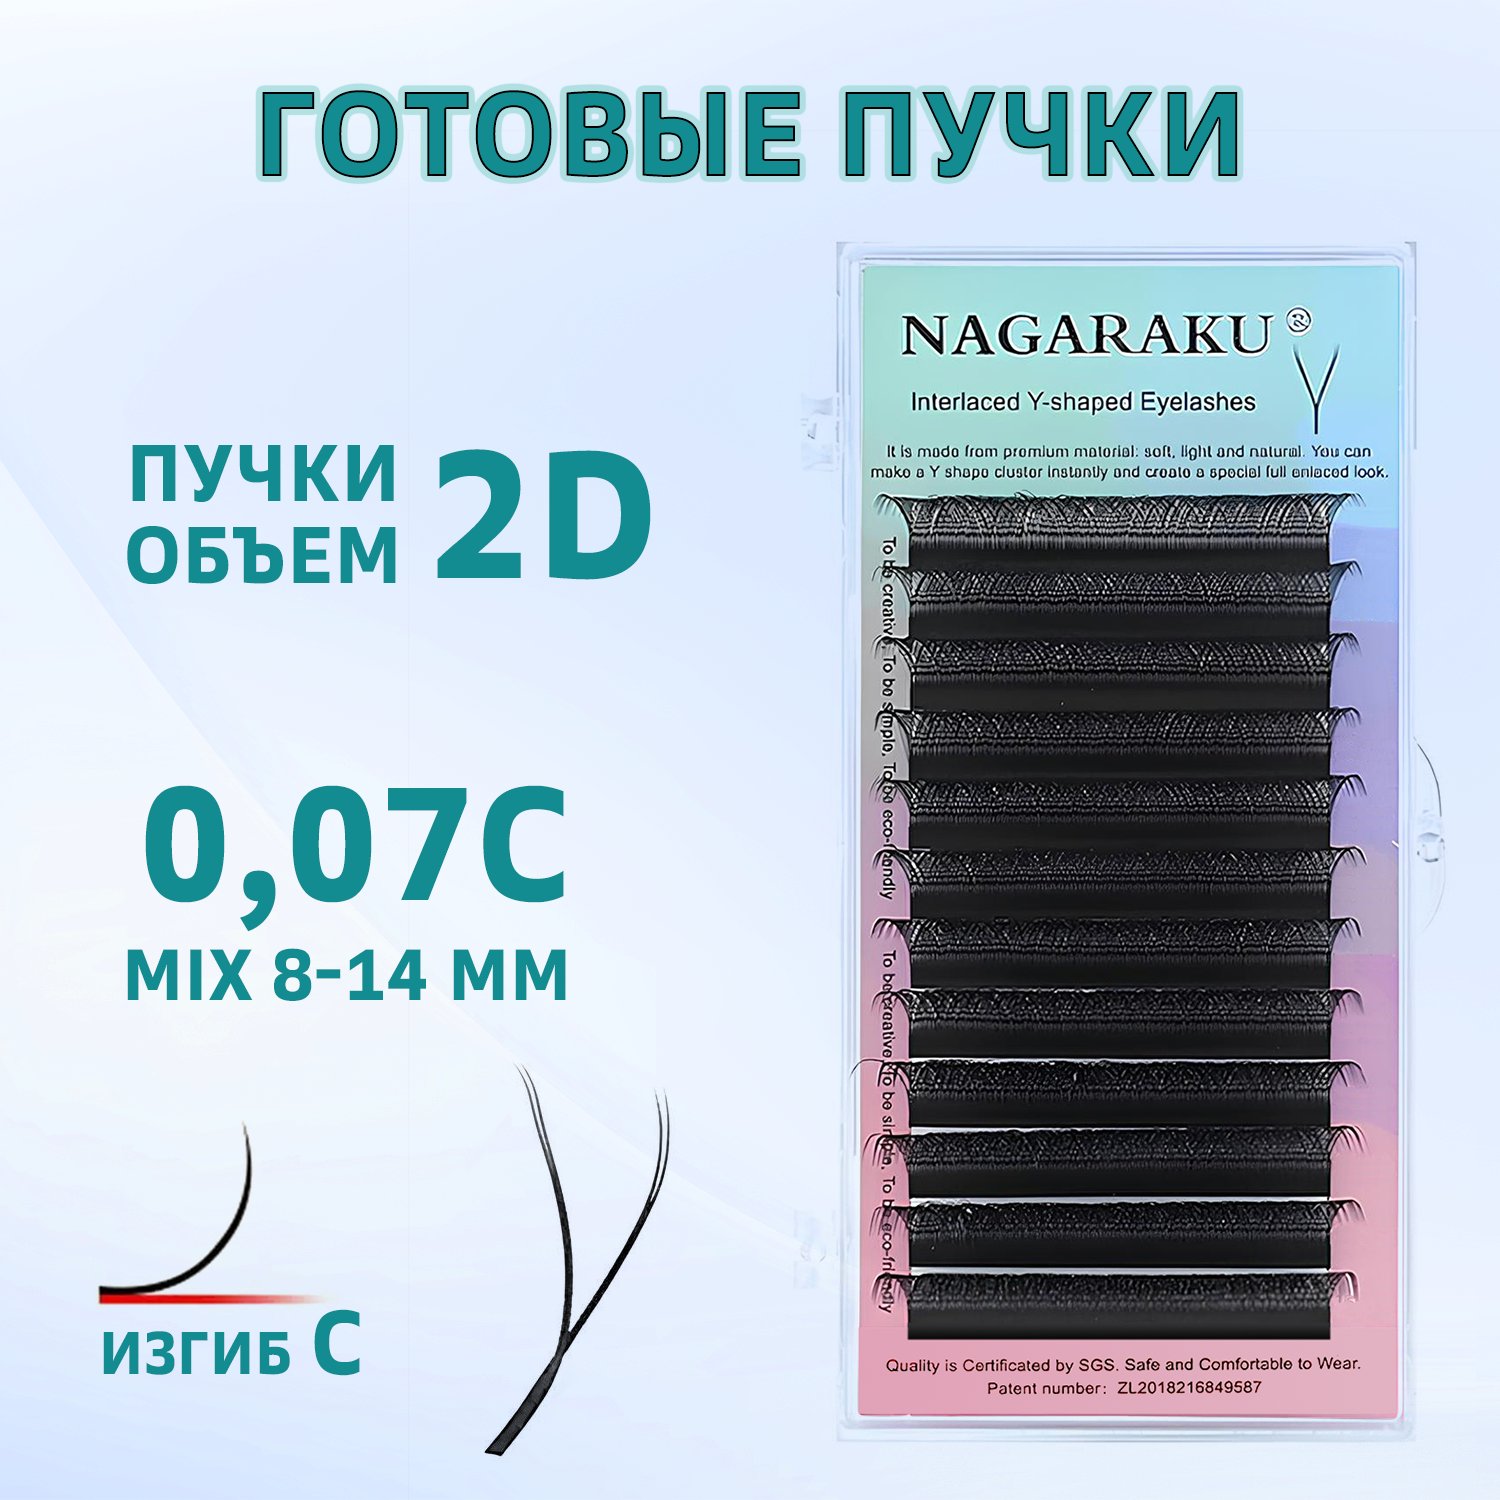 Ресницы для наращивания Nagaraku готовые пучки 2D изгиб С mix 8-14 мм YY форма nagaraku ресницы для наращивания готовые пучки 2d y shape d 0 07 8 12мм